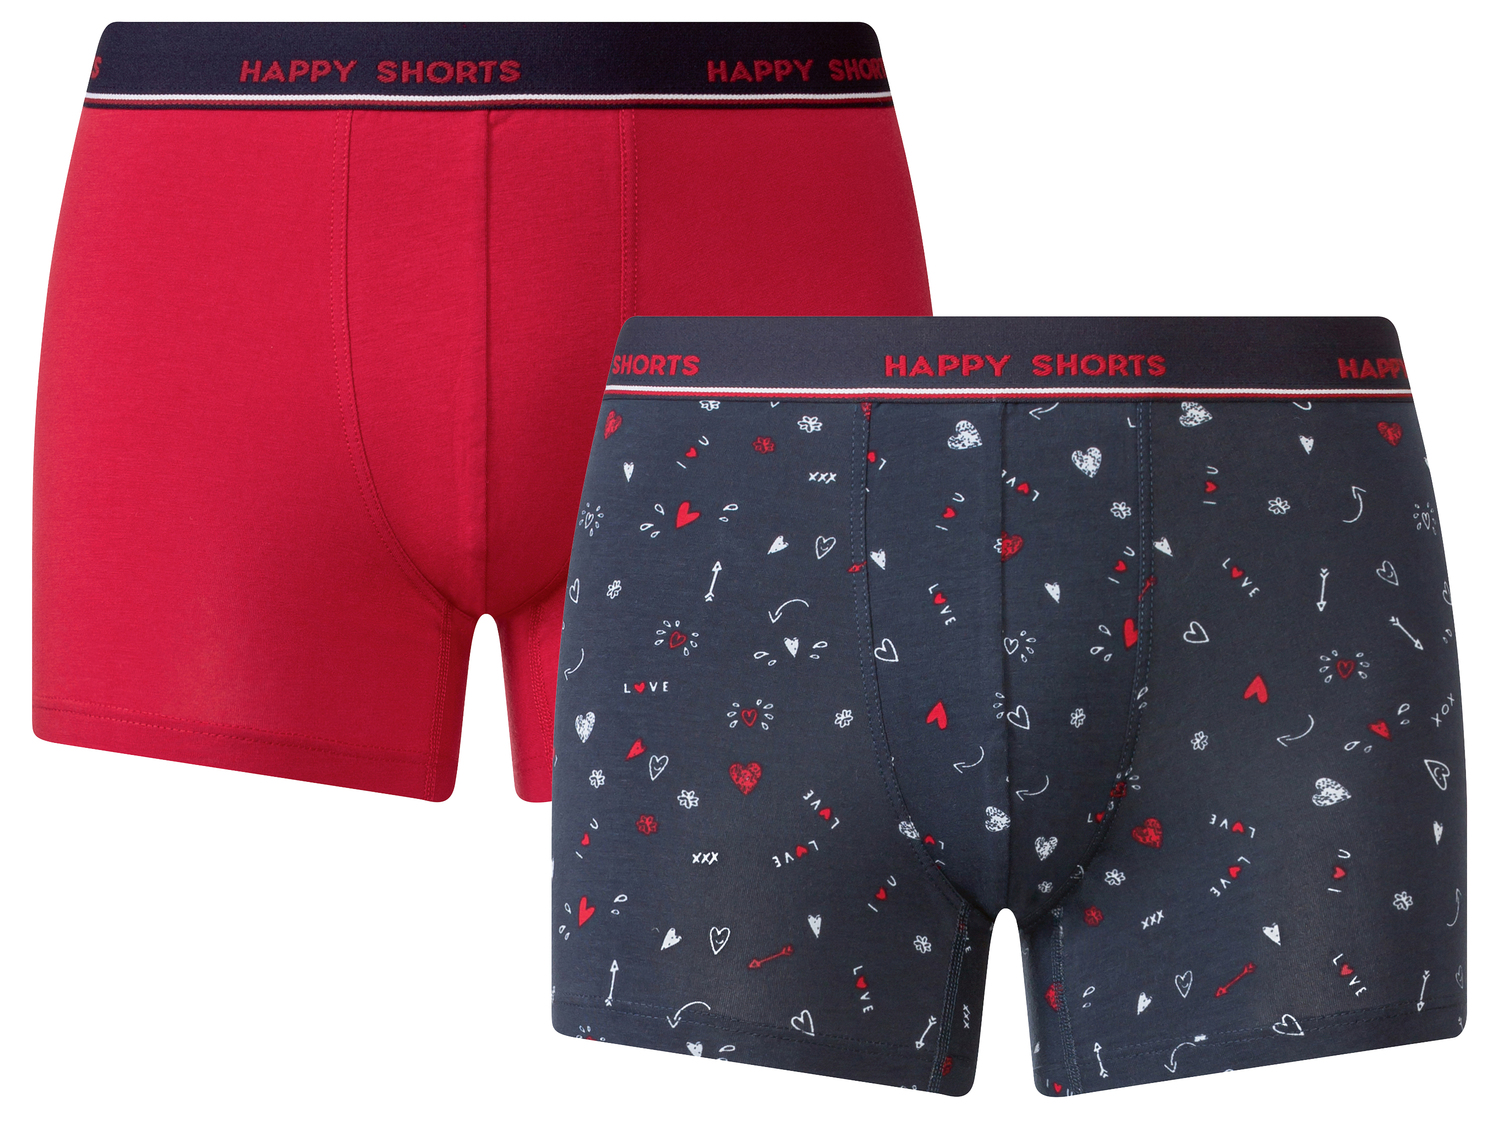 Boxer da uomo Happy-shorts, prezzo 9.99 &#8364; 
2 pezzi - Misure: M-XL
Taglie ...